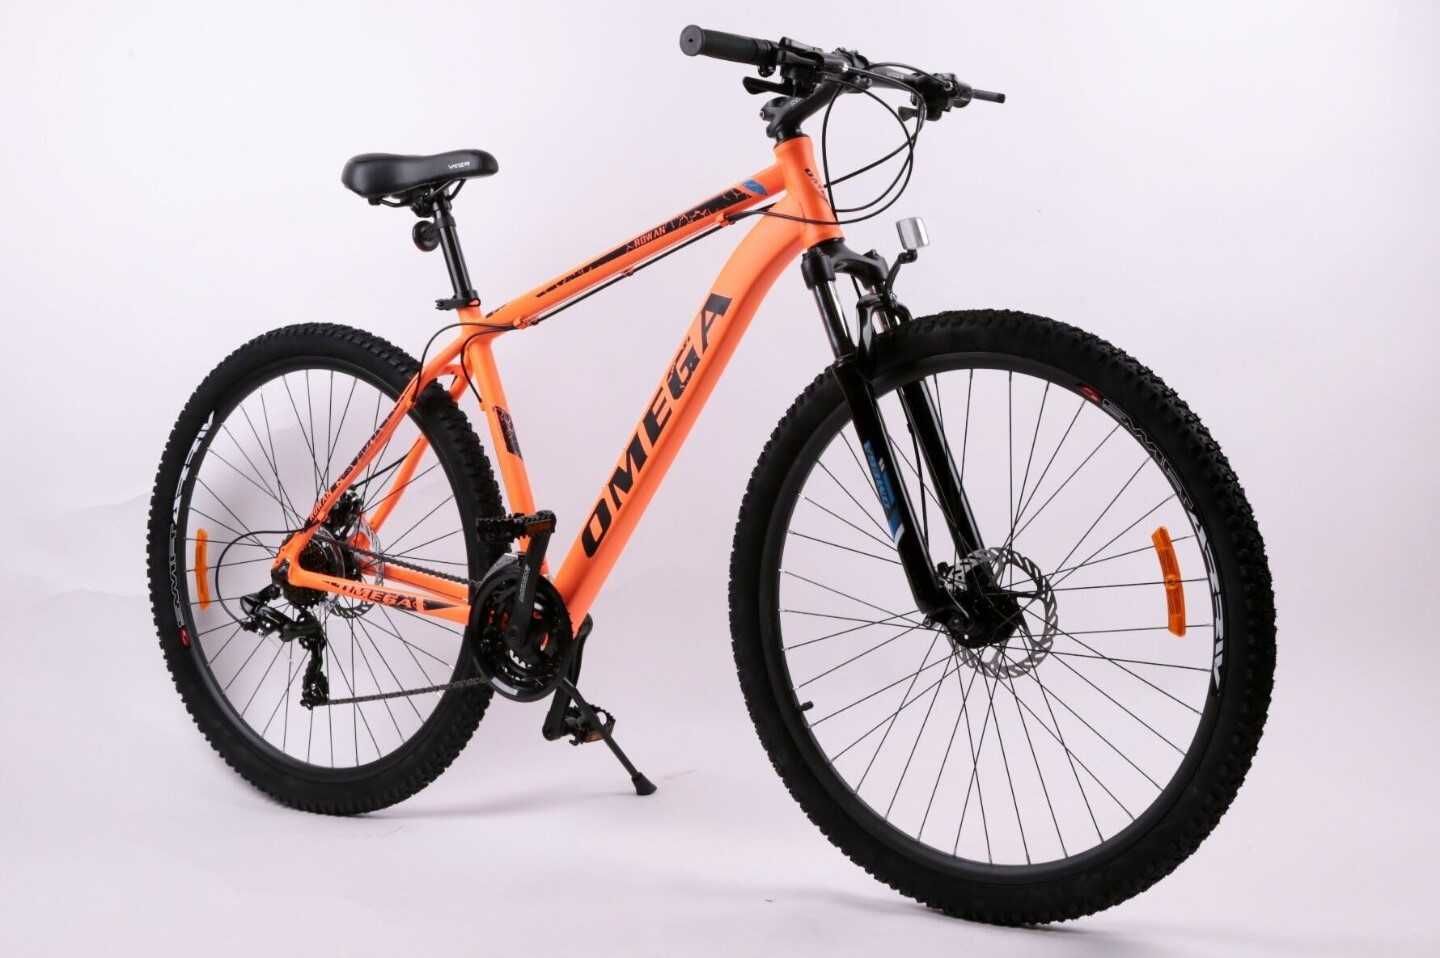 Bicicletă nouă Omega Rowan 26", portocaliu-negru